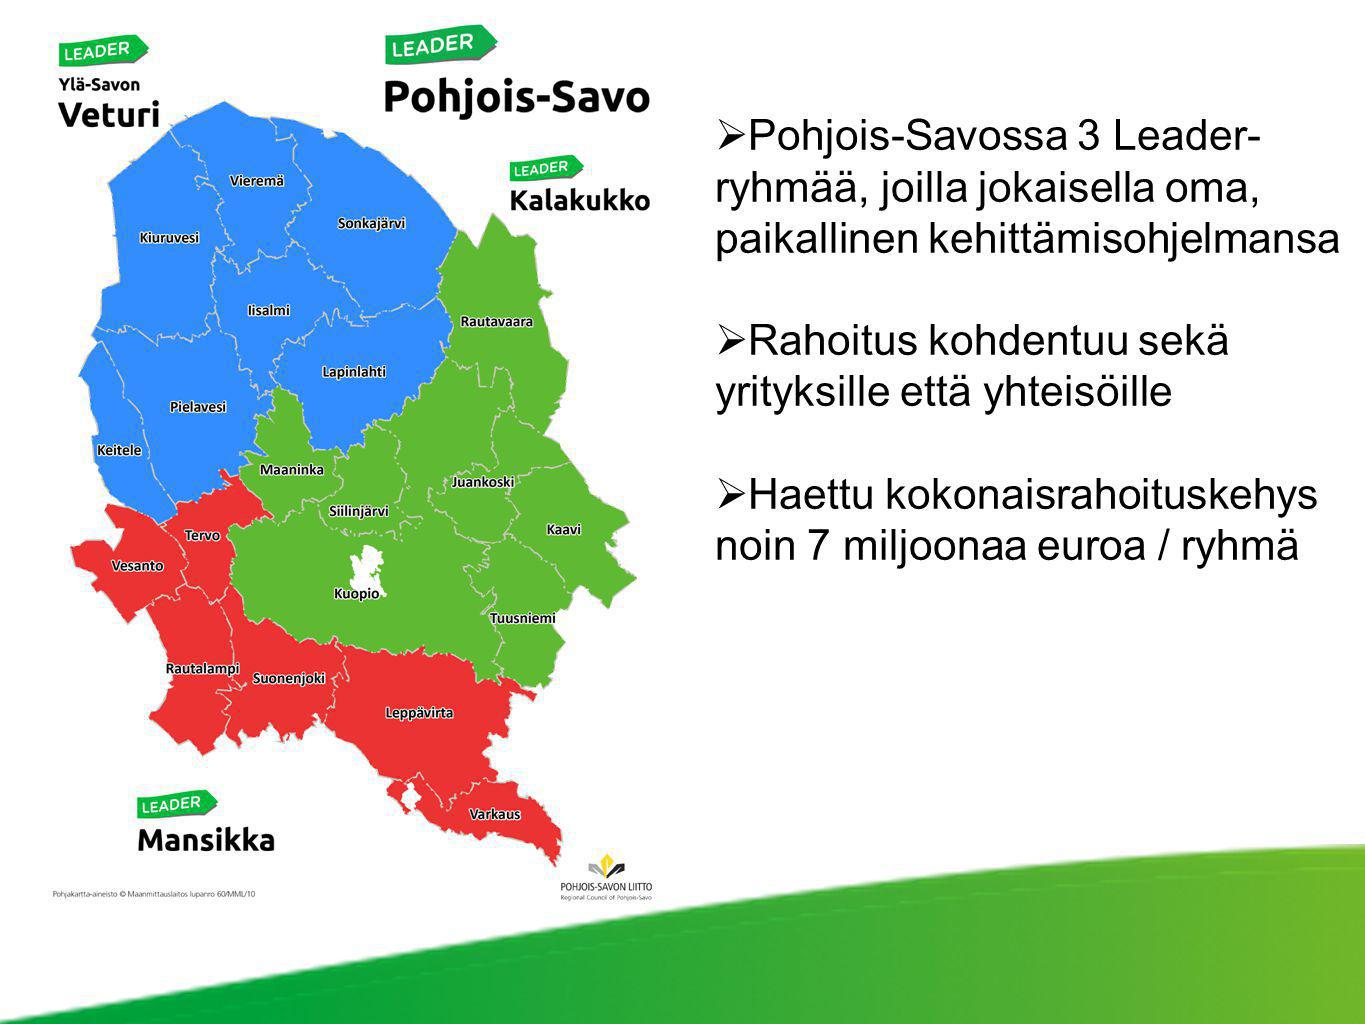 Pohjois-Savossa 3 Leader-ryhmää, joilla jokaisella oma, paikallinen kehittämisohjelmansa